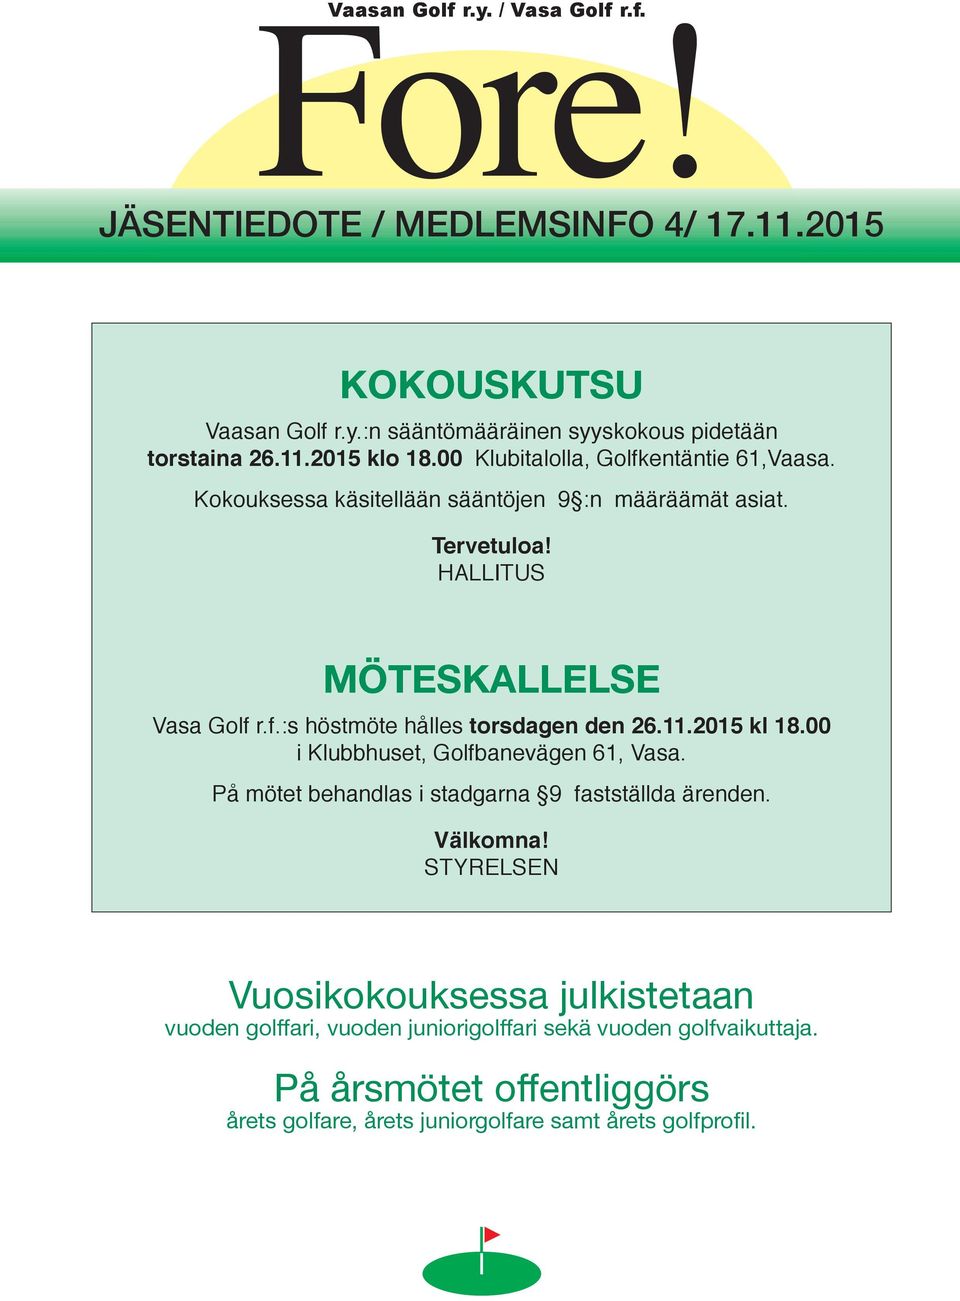 11.2015 kl 18.00 i Klubbhuset, Golfbanevägen 61, Vasa. På mötet behandlas i stadgarna 9 fastställda ärenden. Välkomna!